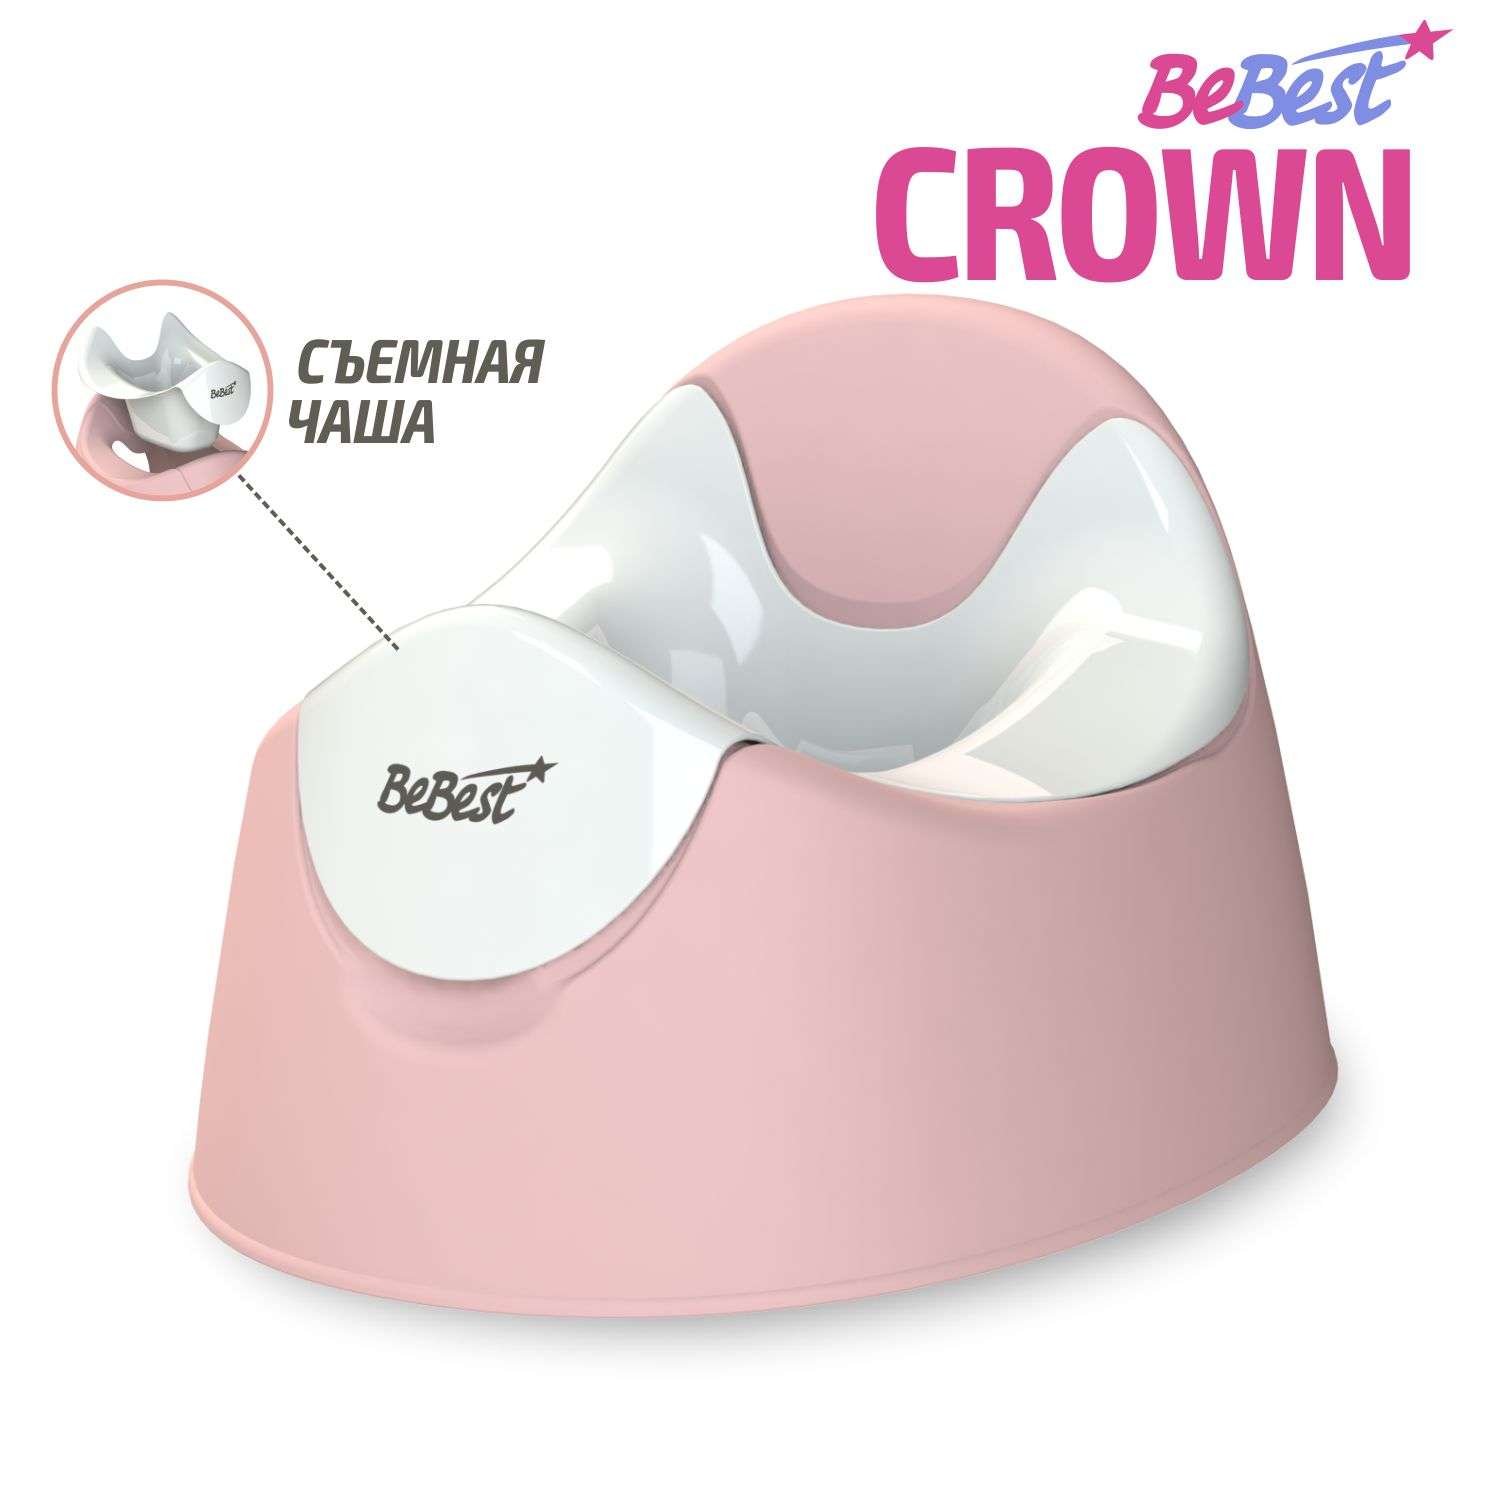 Горшок детский BeBest Crown розовый - фото 1